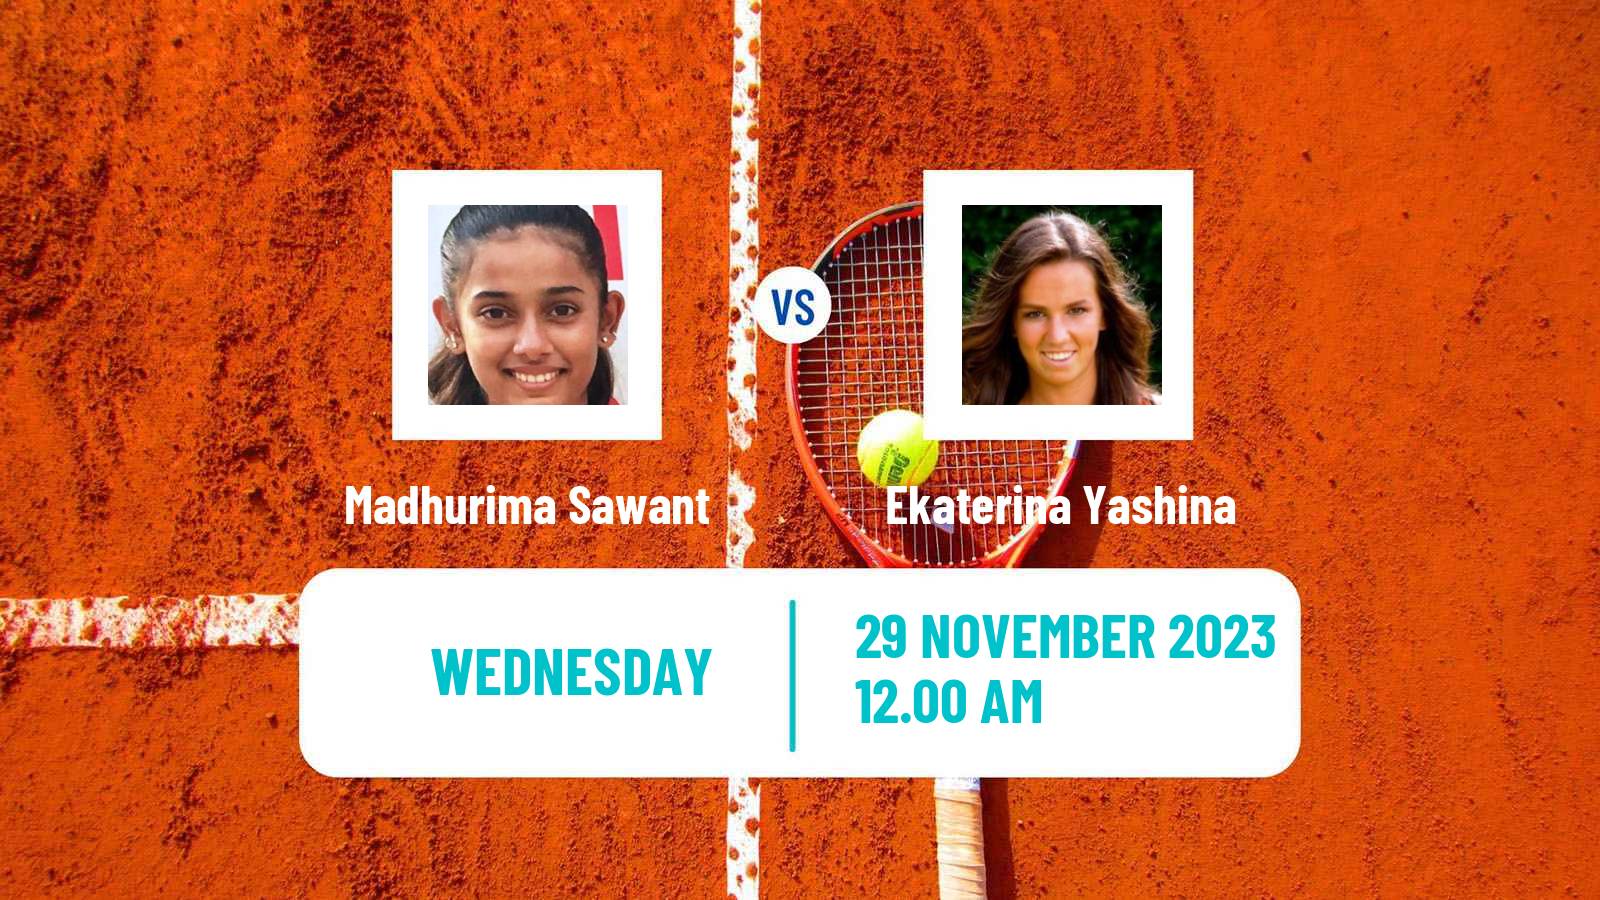 Tennis ITF W15 Ahmedabad Women 2023 Madhurima Sawant - Ekaterina Yashina